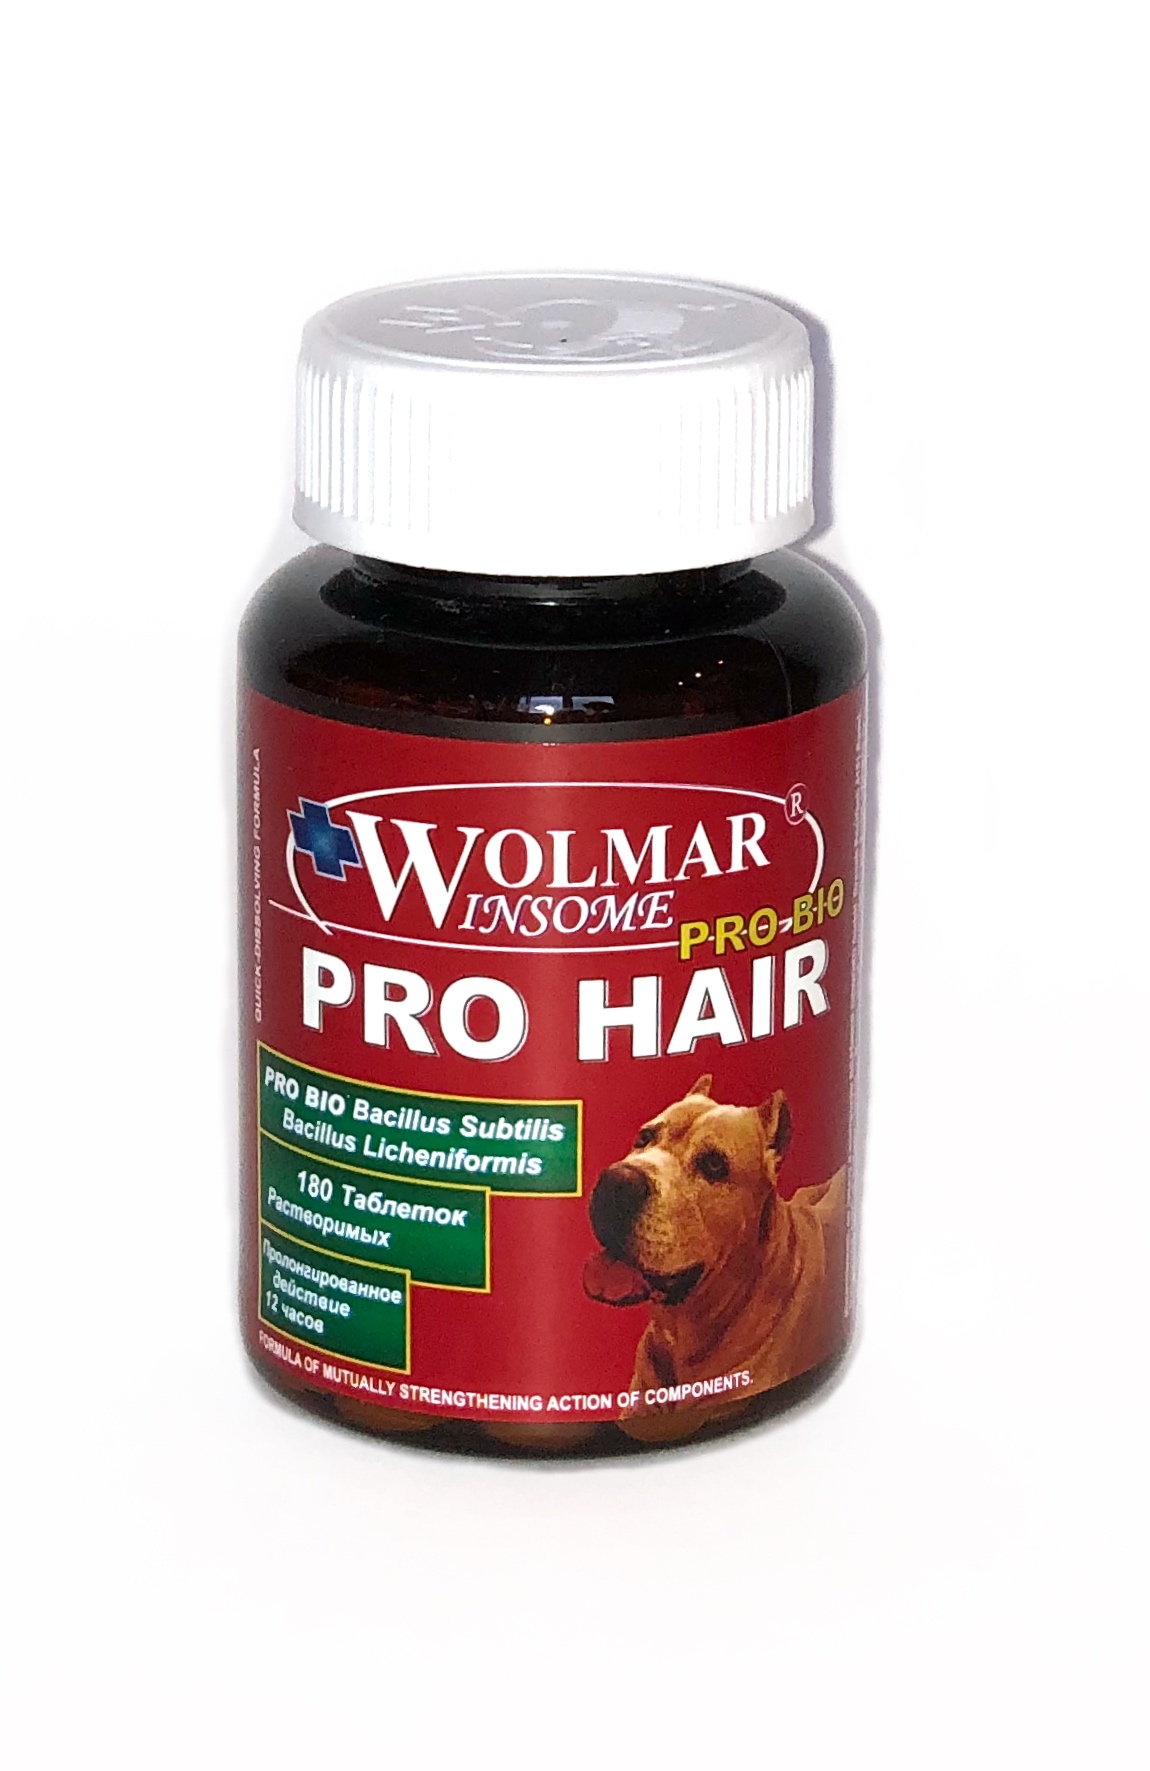 Комплекс для улучшения состояния кожи и шерсти у щенков и собак в период линьки WOLMAR WINSOME® PRO BIO PRO HAIR -180 таблеток